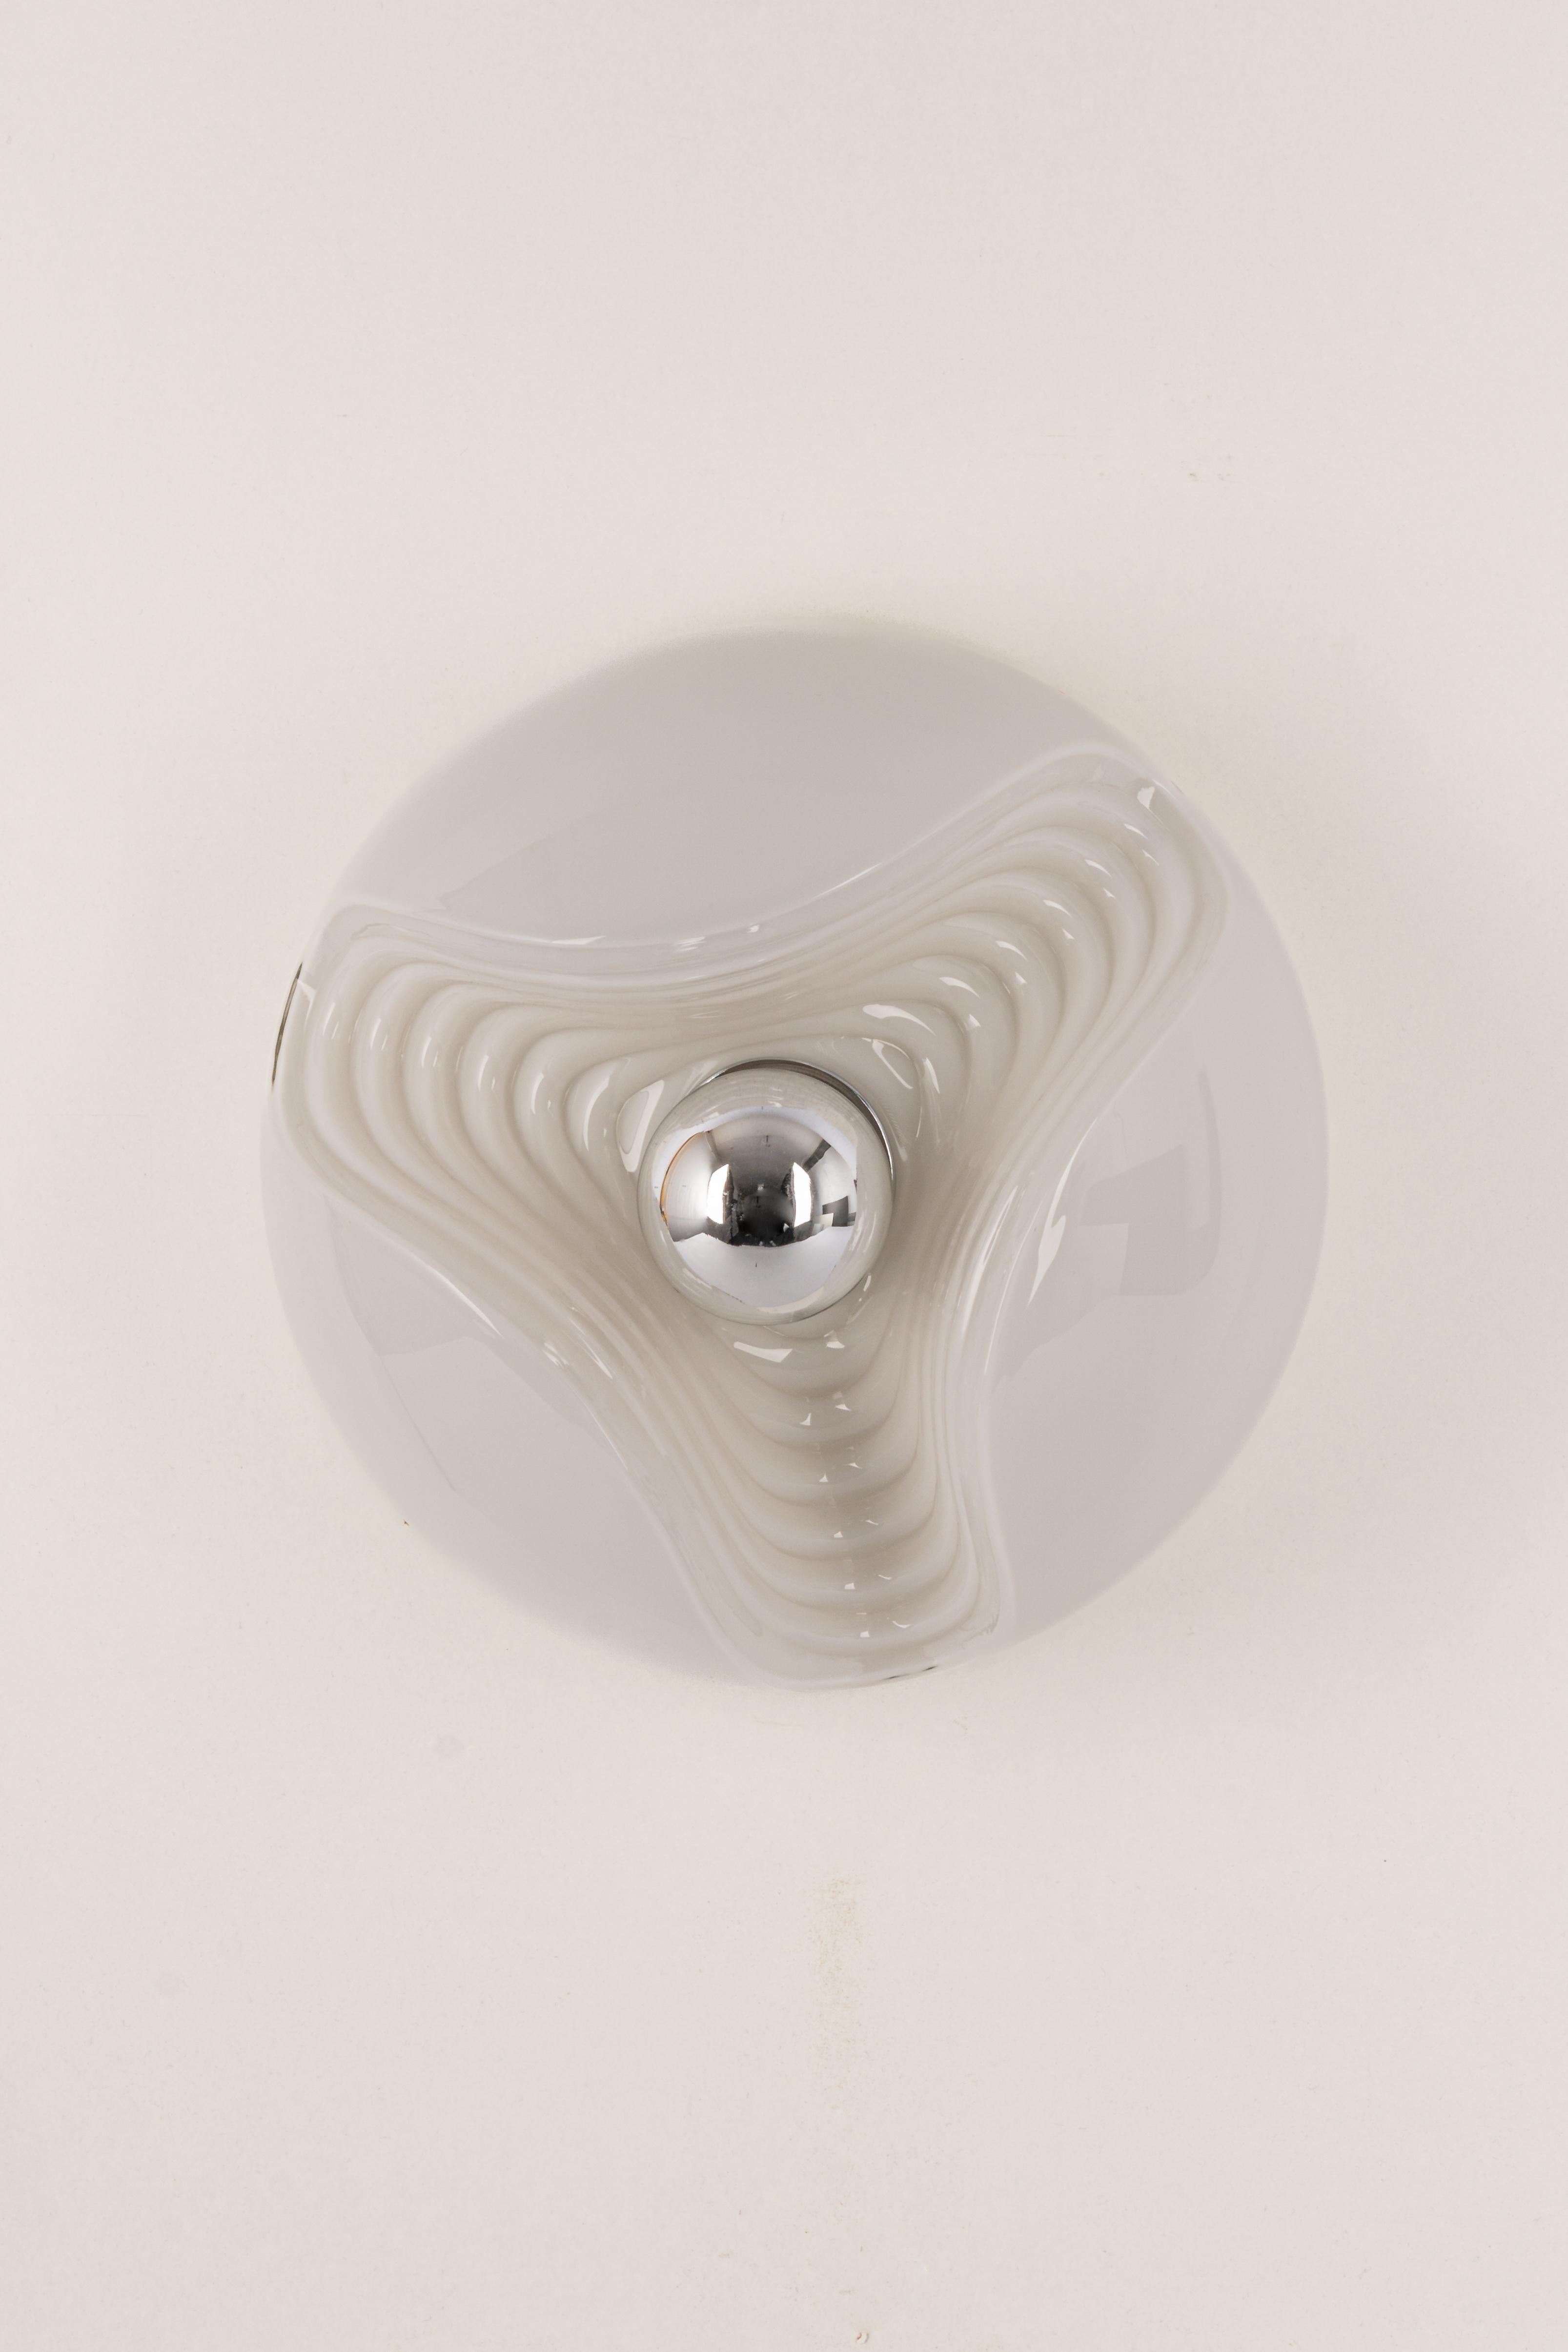 Ein besonderer runder Wandleuchter aus biomorphem Opalglas, entworfen von Koch & Lowy für Peill & Putzler, hergestellt in Deutschland, ca. 1970er Jahre.

Fassungen: Eine x E27 Standard-Glühbirne. (100 W max).
Glühbirnen sind nicht enthalten. Dieses